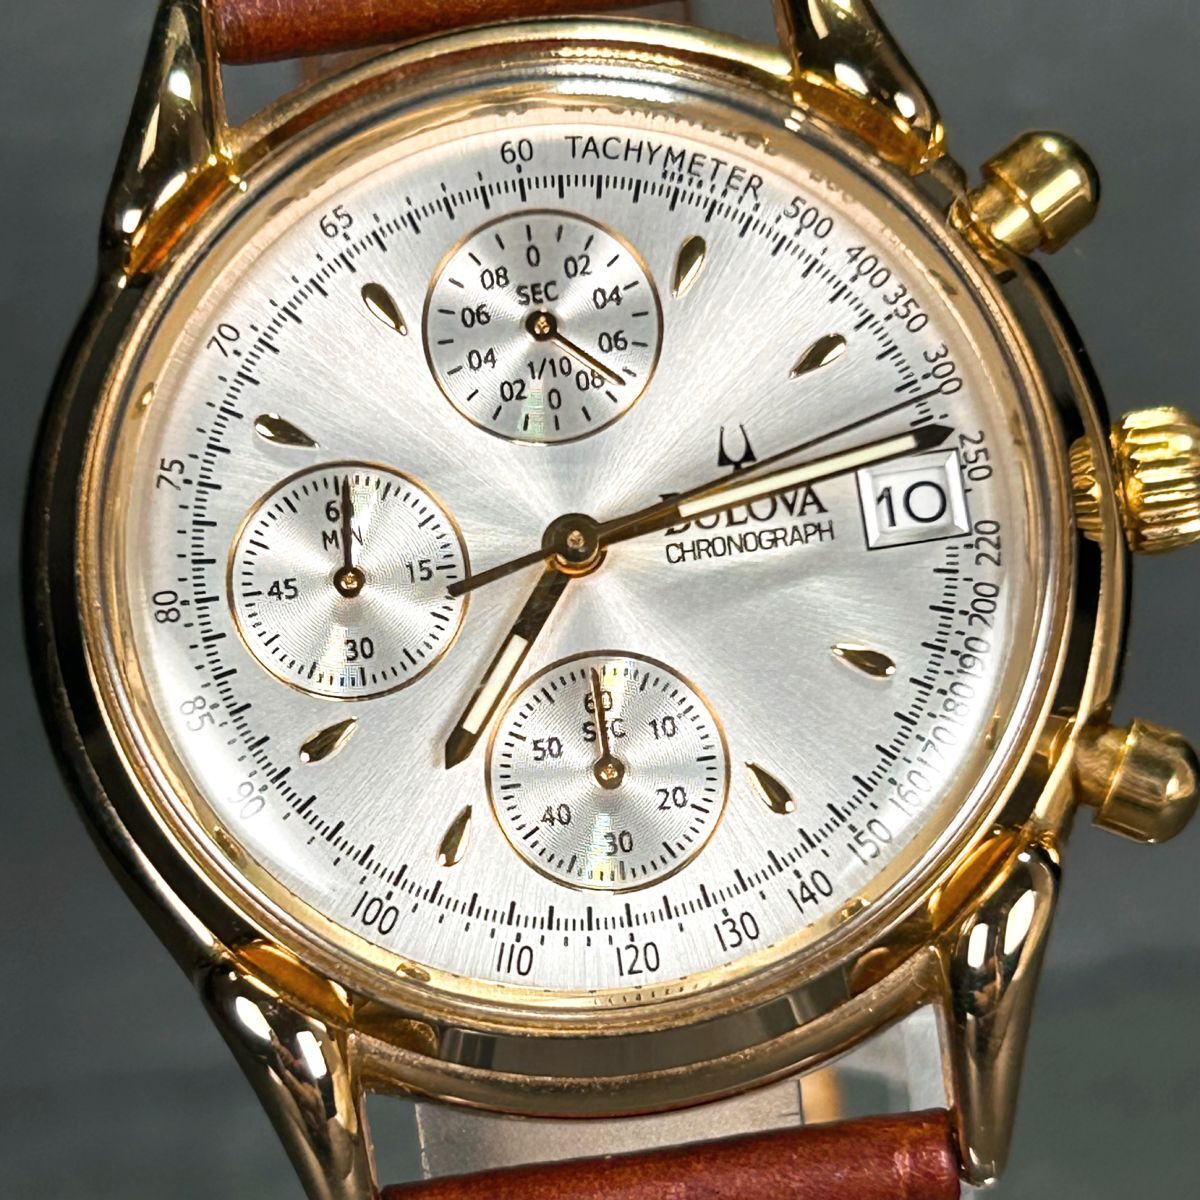  хорошая вещь BULOVA Broba BVC302 наручные часы кварц аналог хронограф календарь нержавеющая сталь Gold циферблат кожаный ремень мужской 